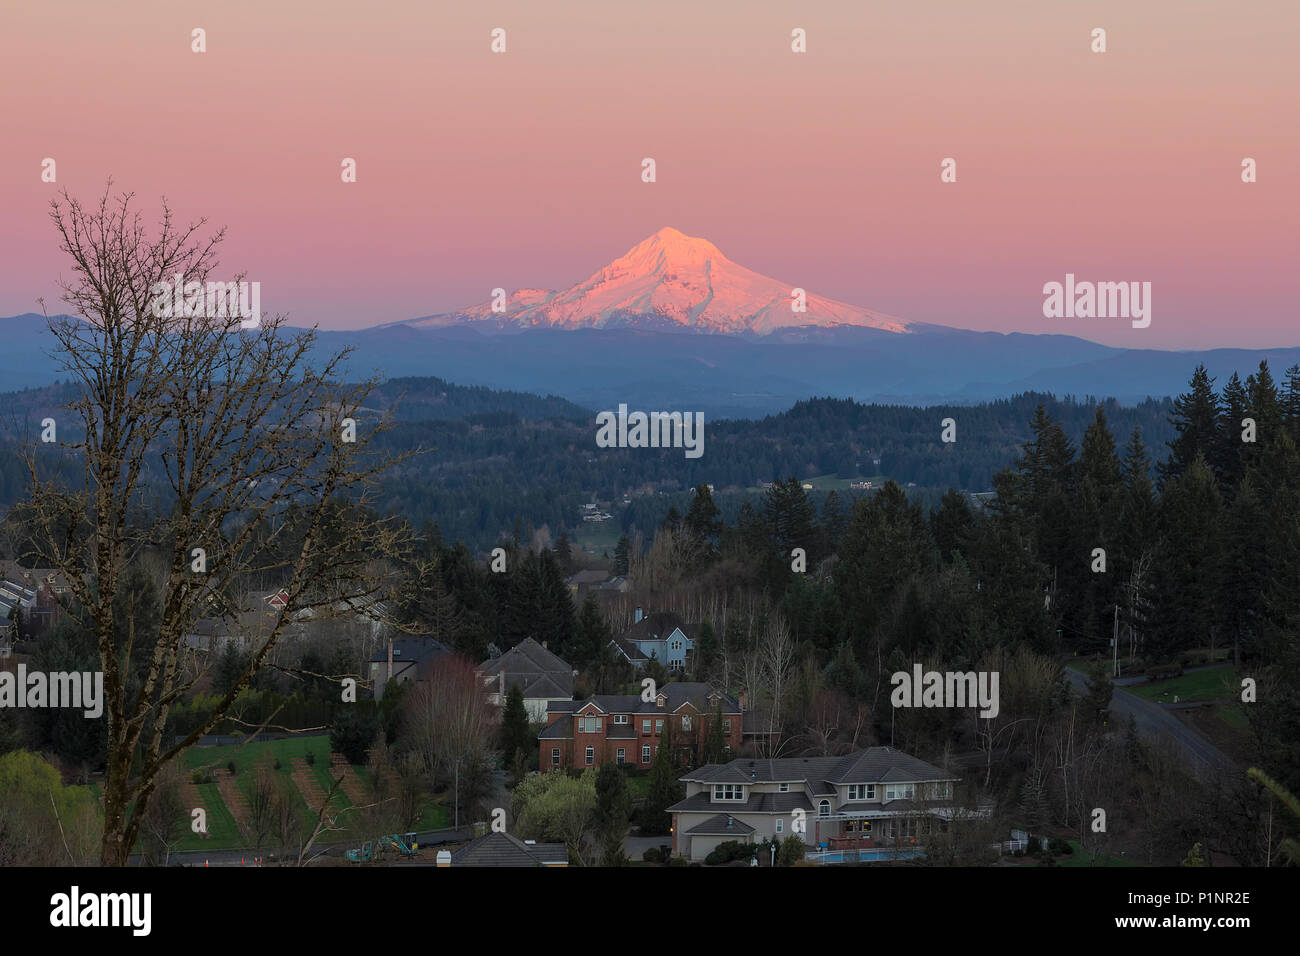 Mount Hood over Happy Valley Oregon upscale luxury residential neighborhood during alpenglow sunset Stock Photo